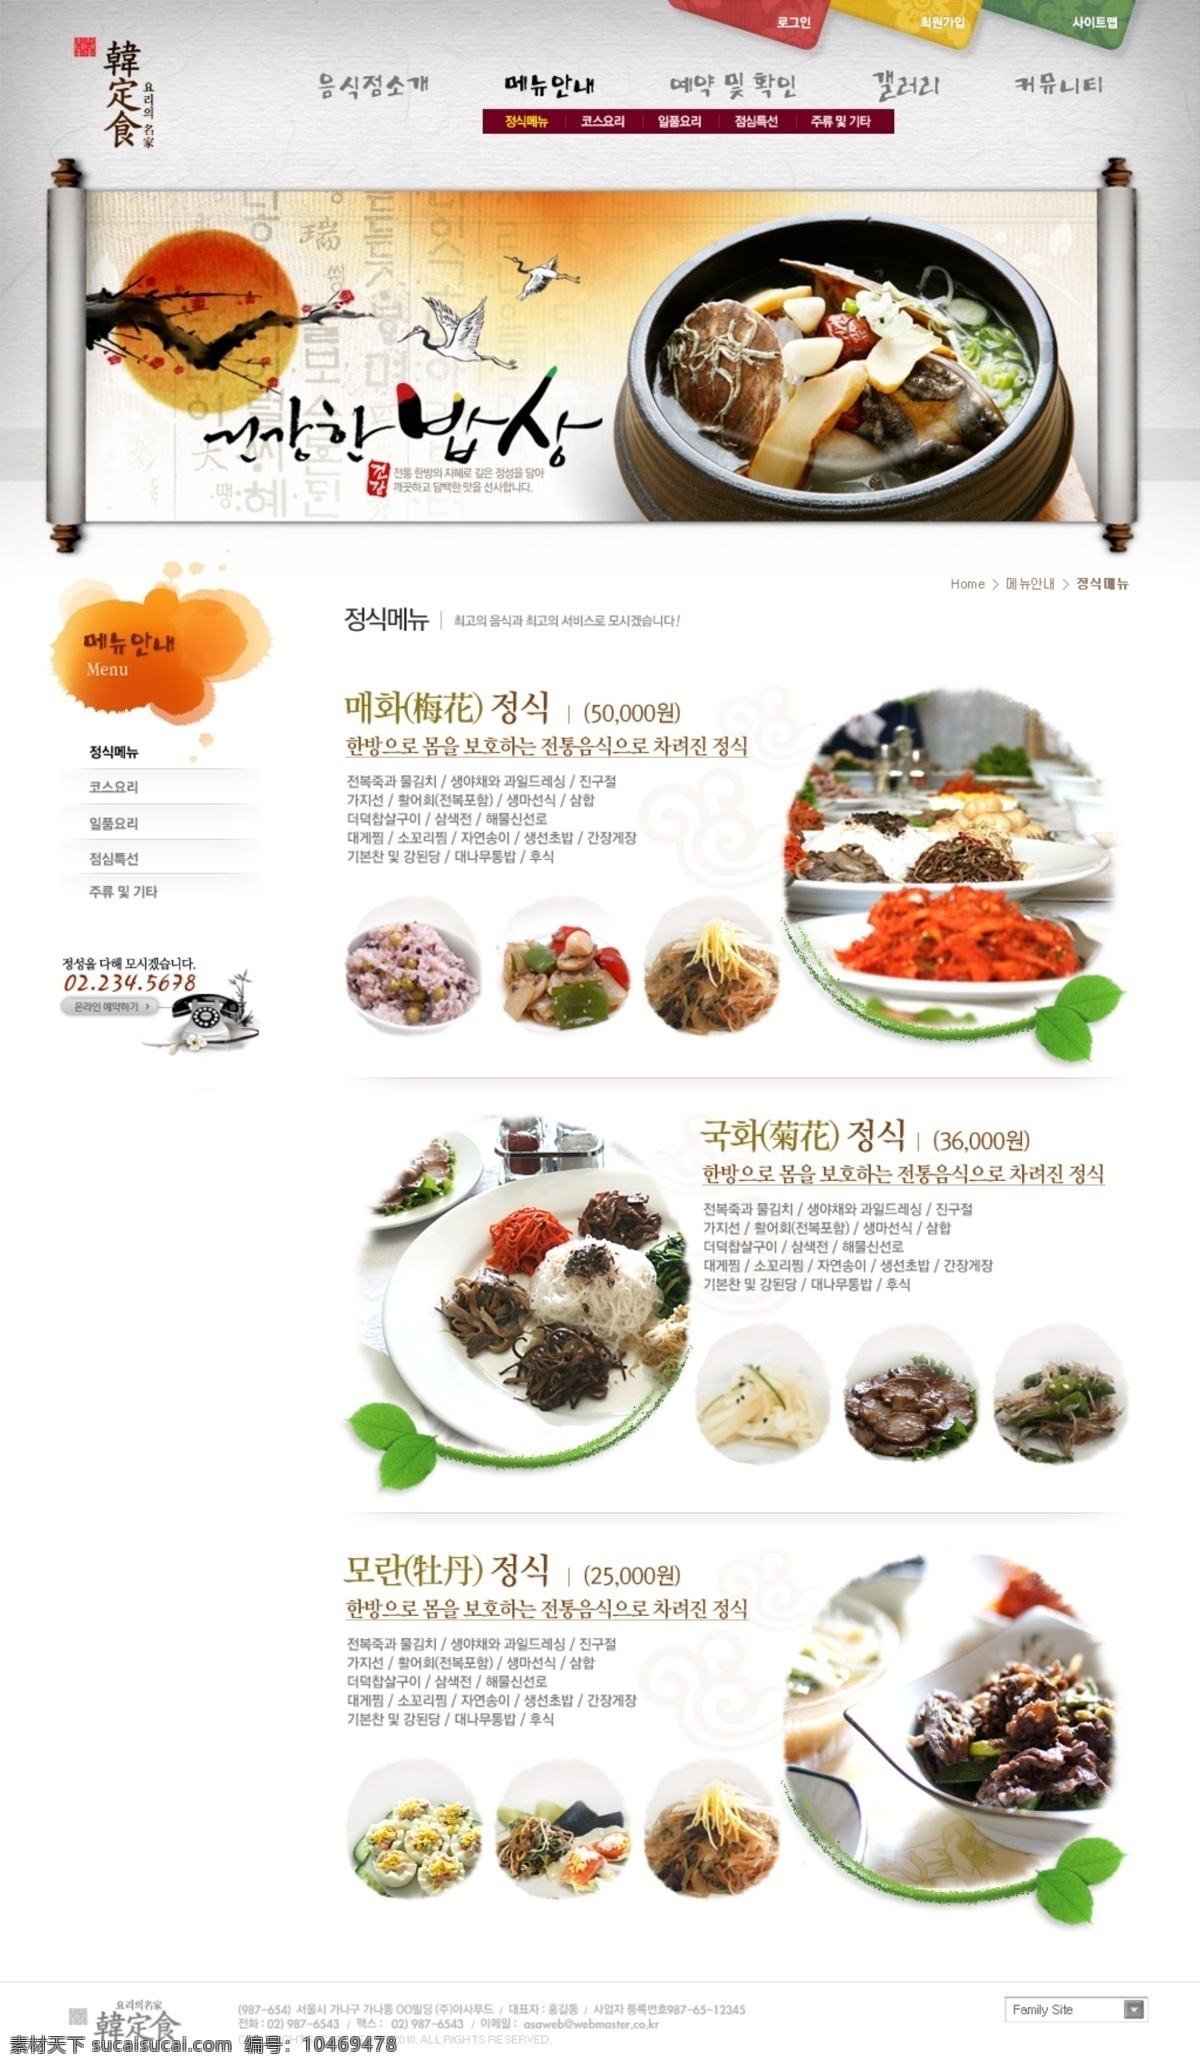 韩式 饮食 介绍 网站 韩国 饮食文化 菜肴介绍 网页素材 网页模板